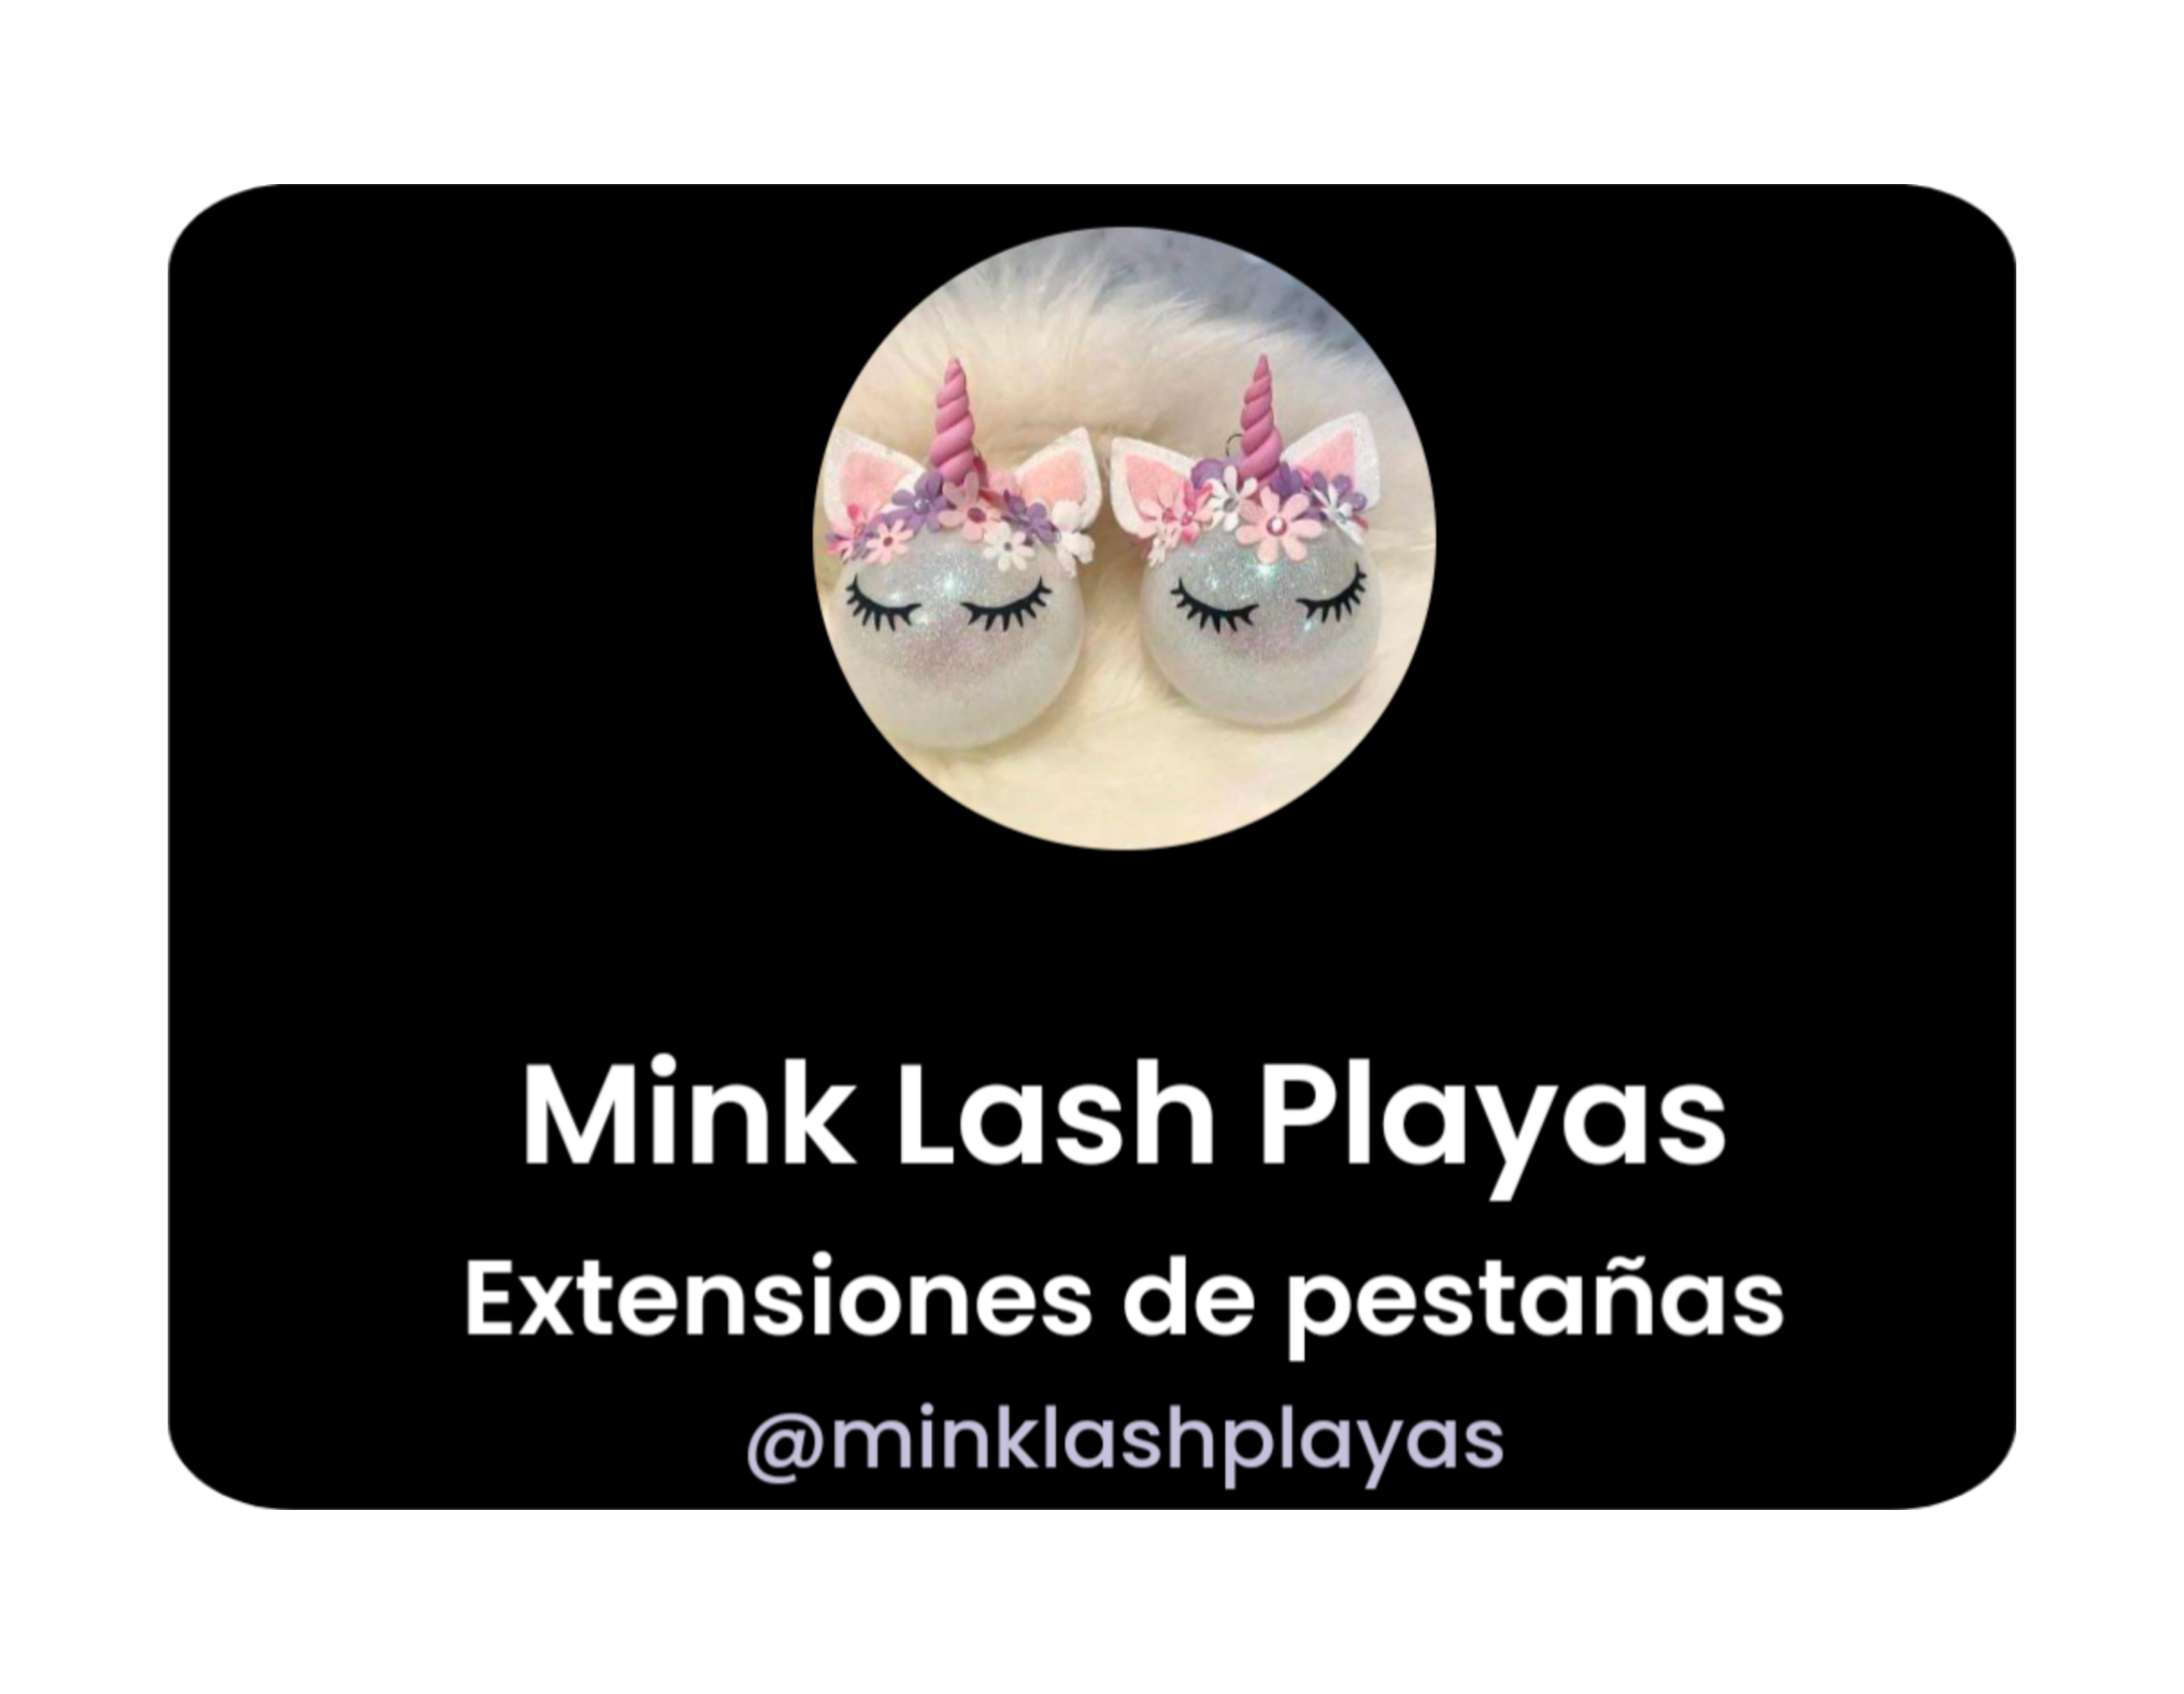 Liks Mink Lash Playas de by CmbRDev Miguel Ramos Págigas web